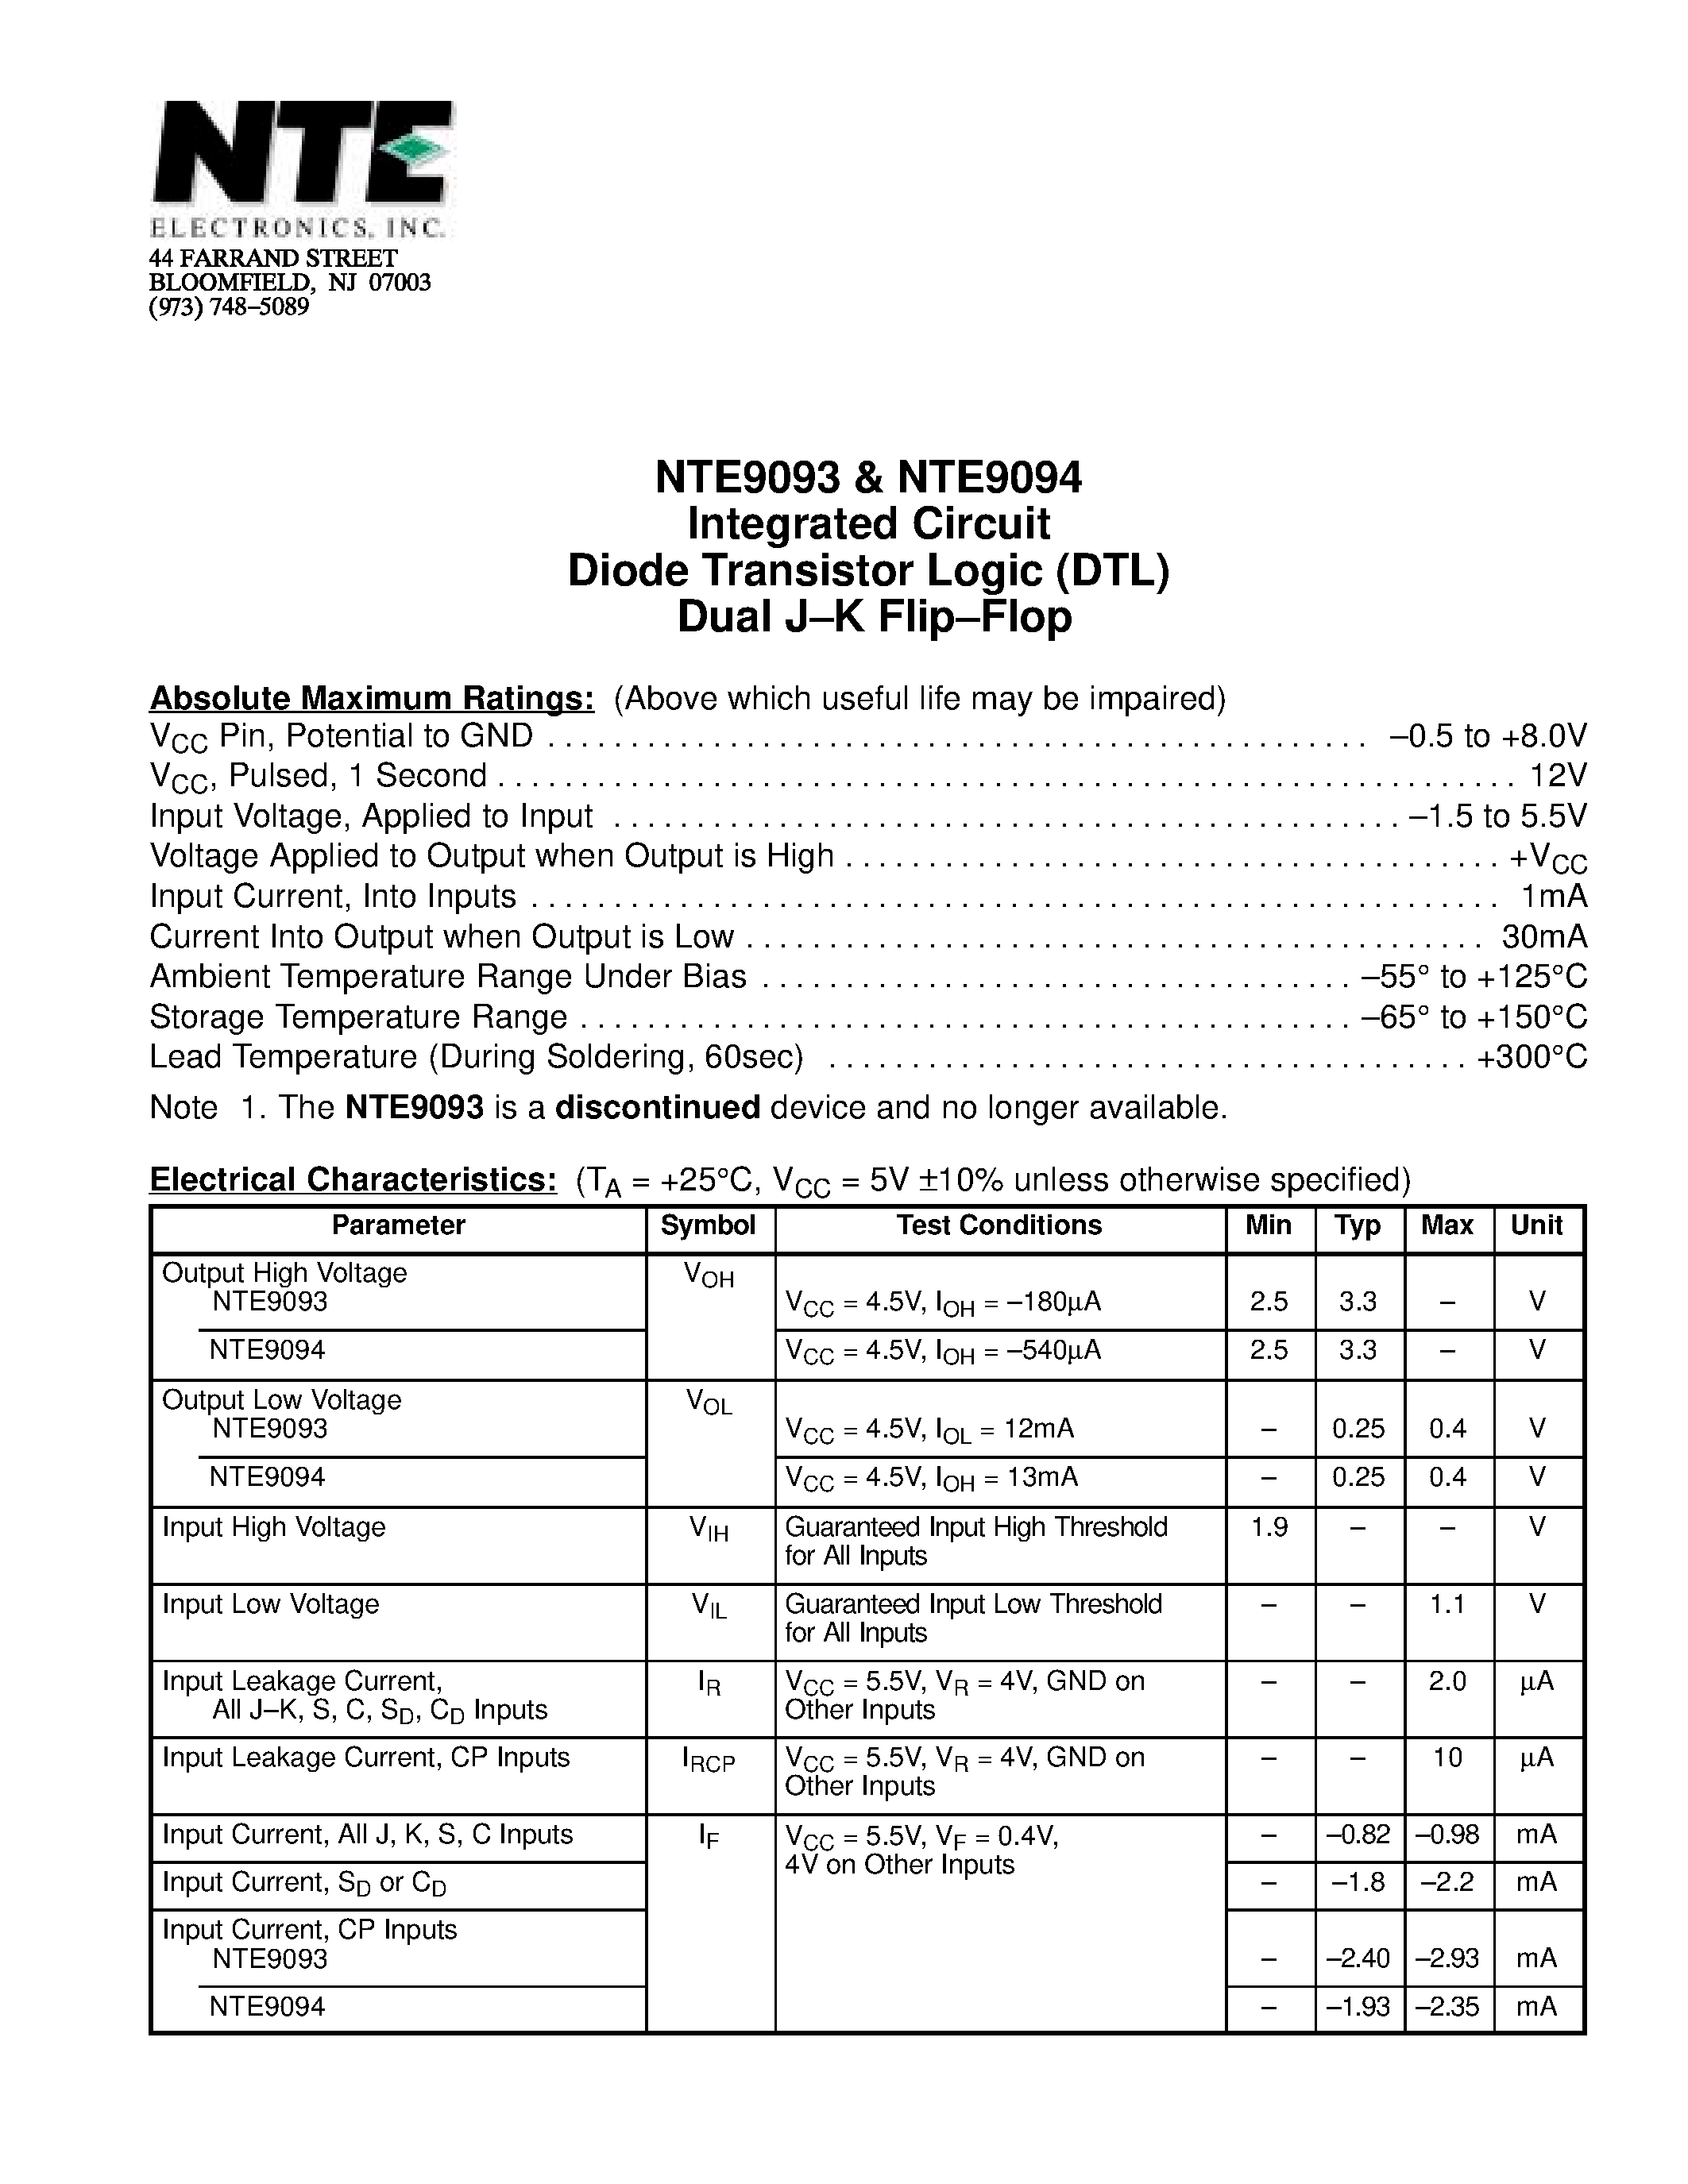 Datasheet NTE9094 - Integrated Circuit Diode Transistor Logic (DTL) Dual J-K Flip-Flop page 1